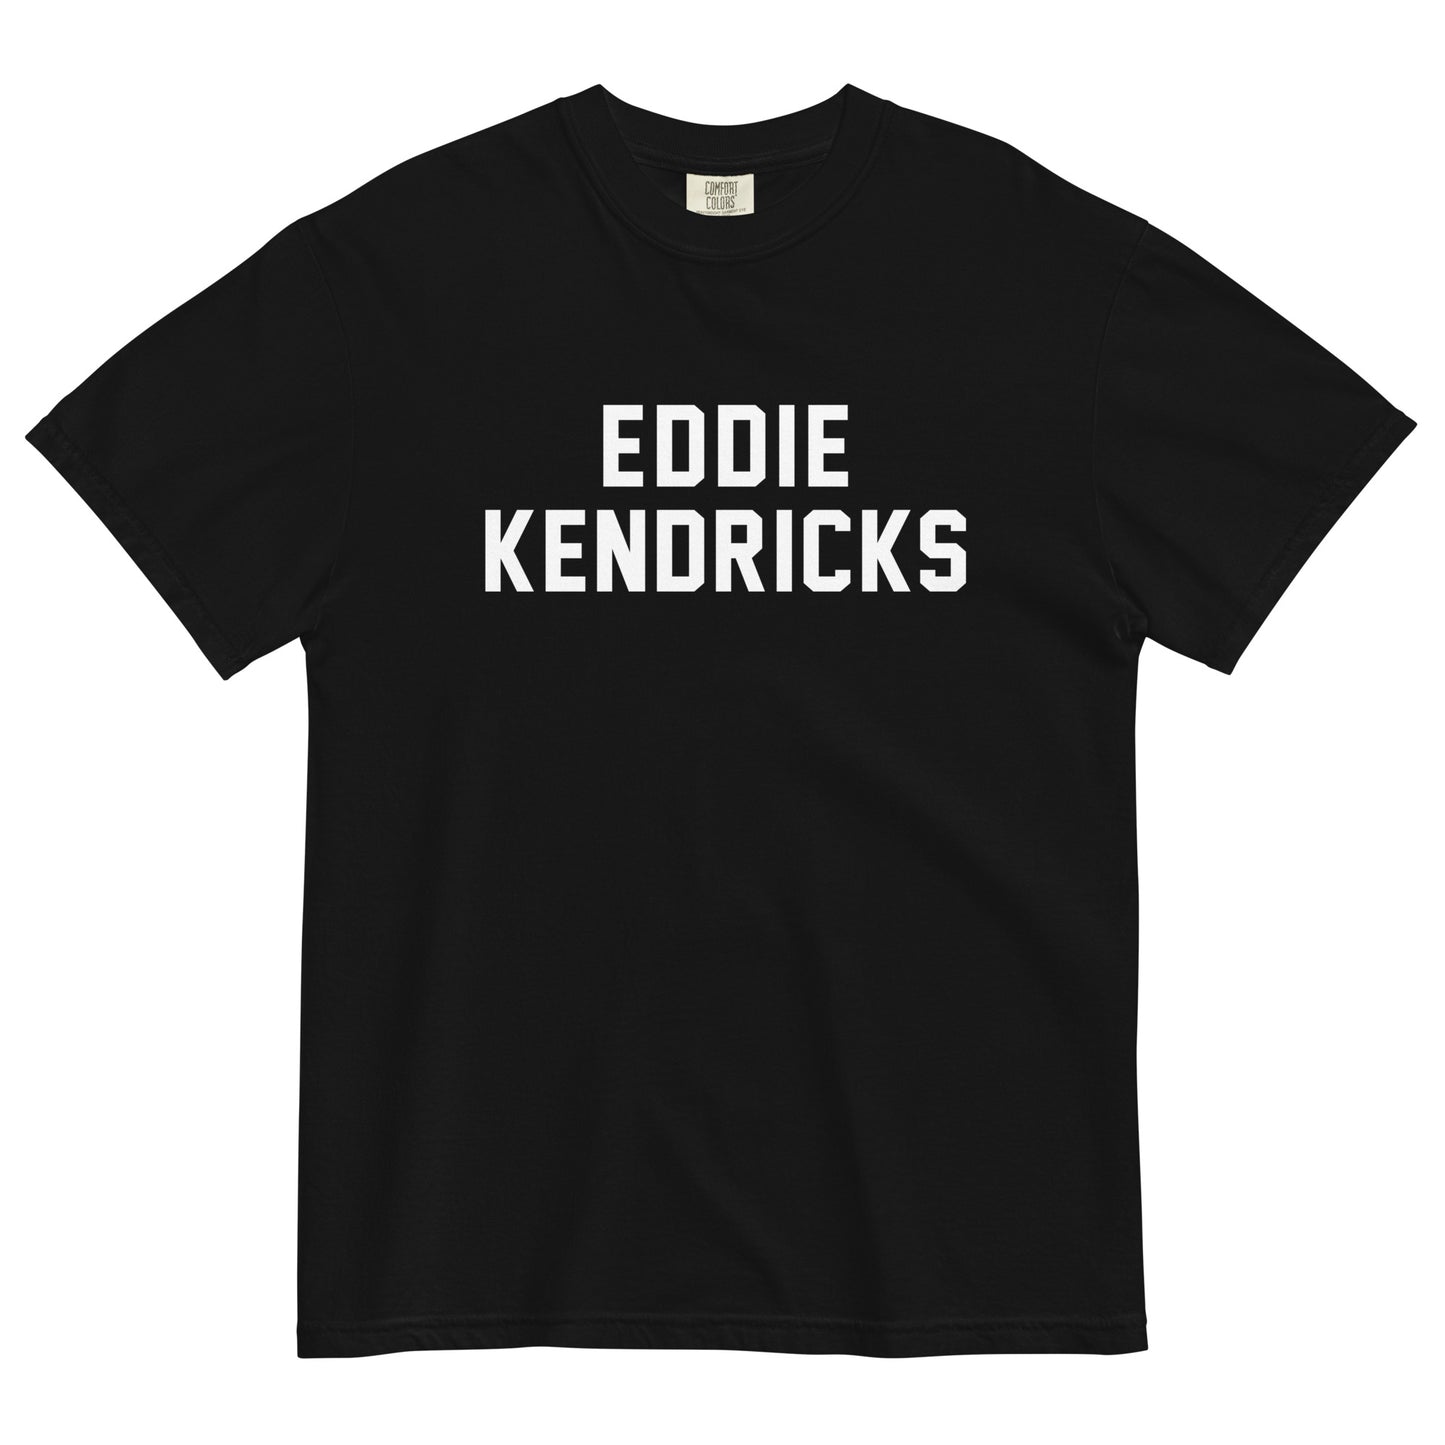 EDDIE KENDRICKS